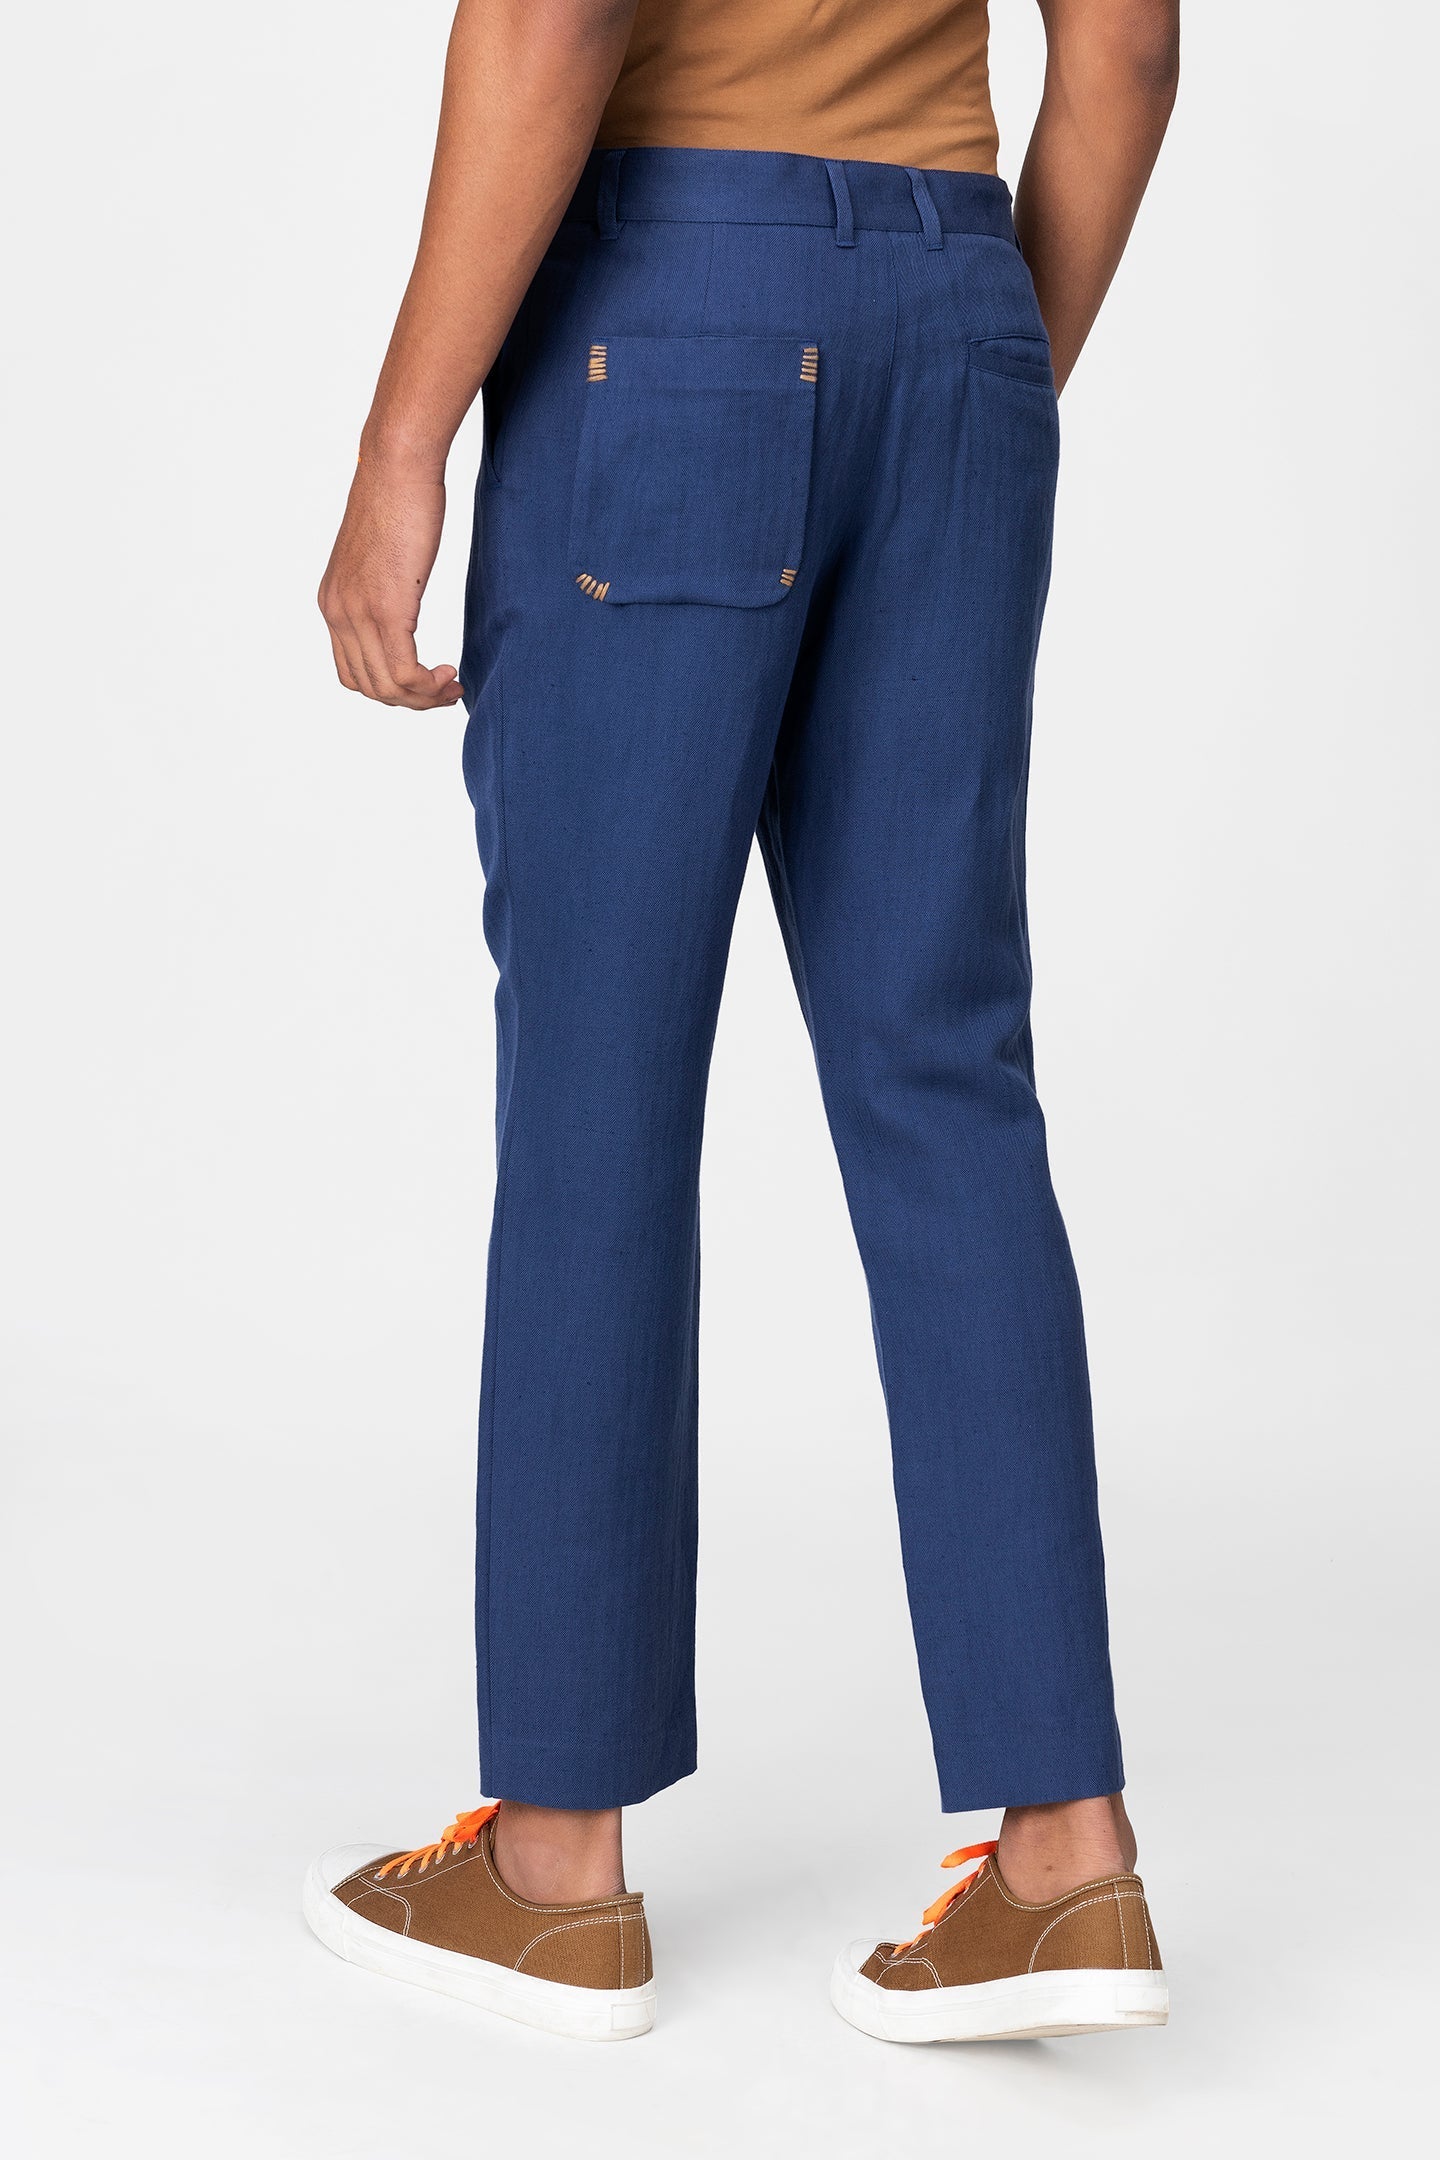 linen-pants - Genes online store 2020